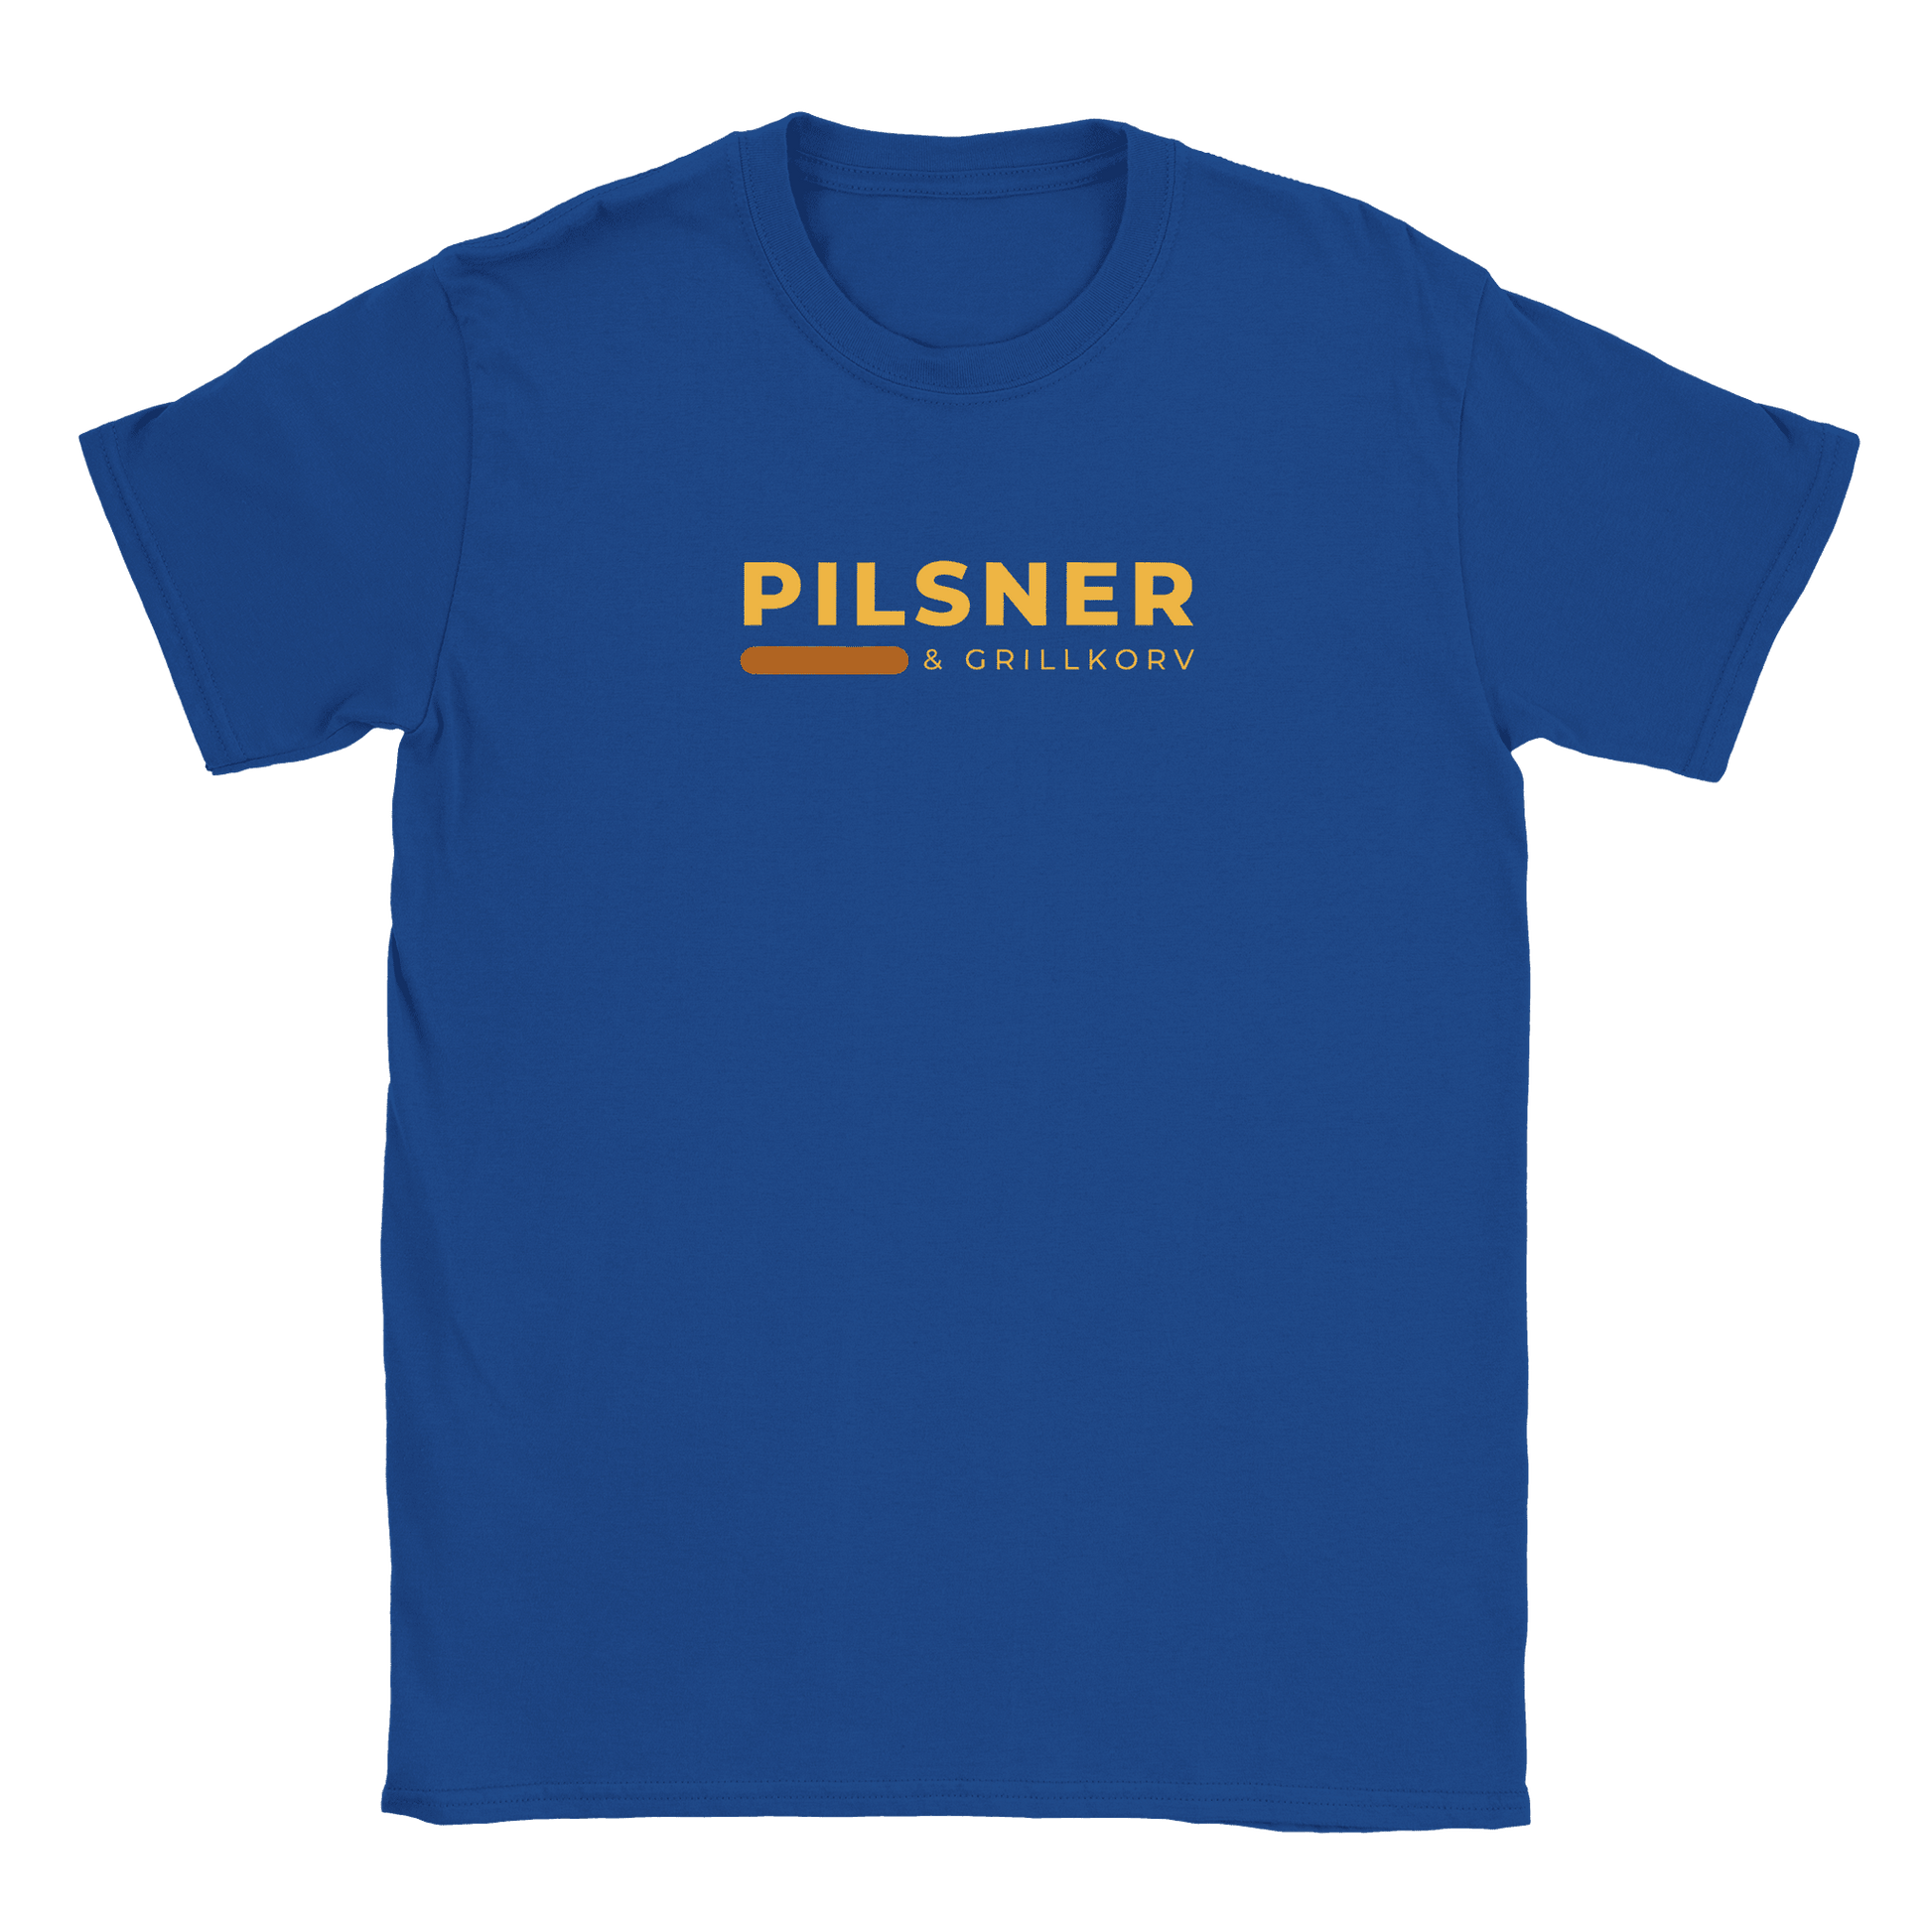 Pilsner och grillkorv - T-shirt Blå